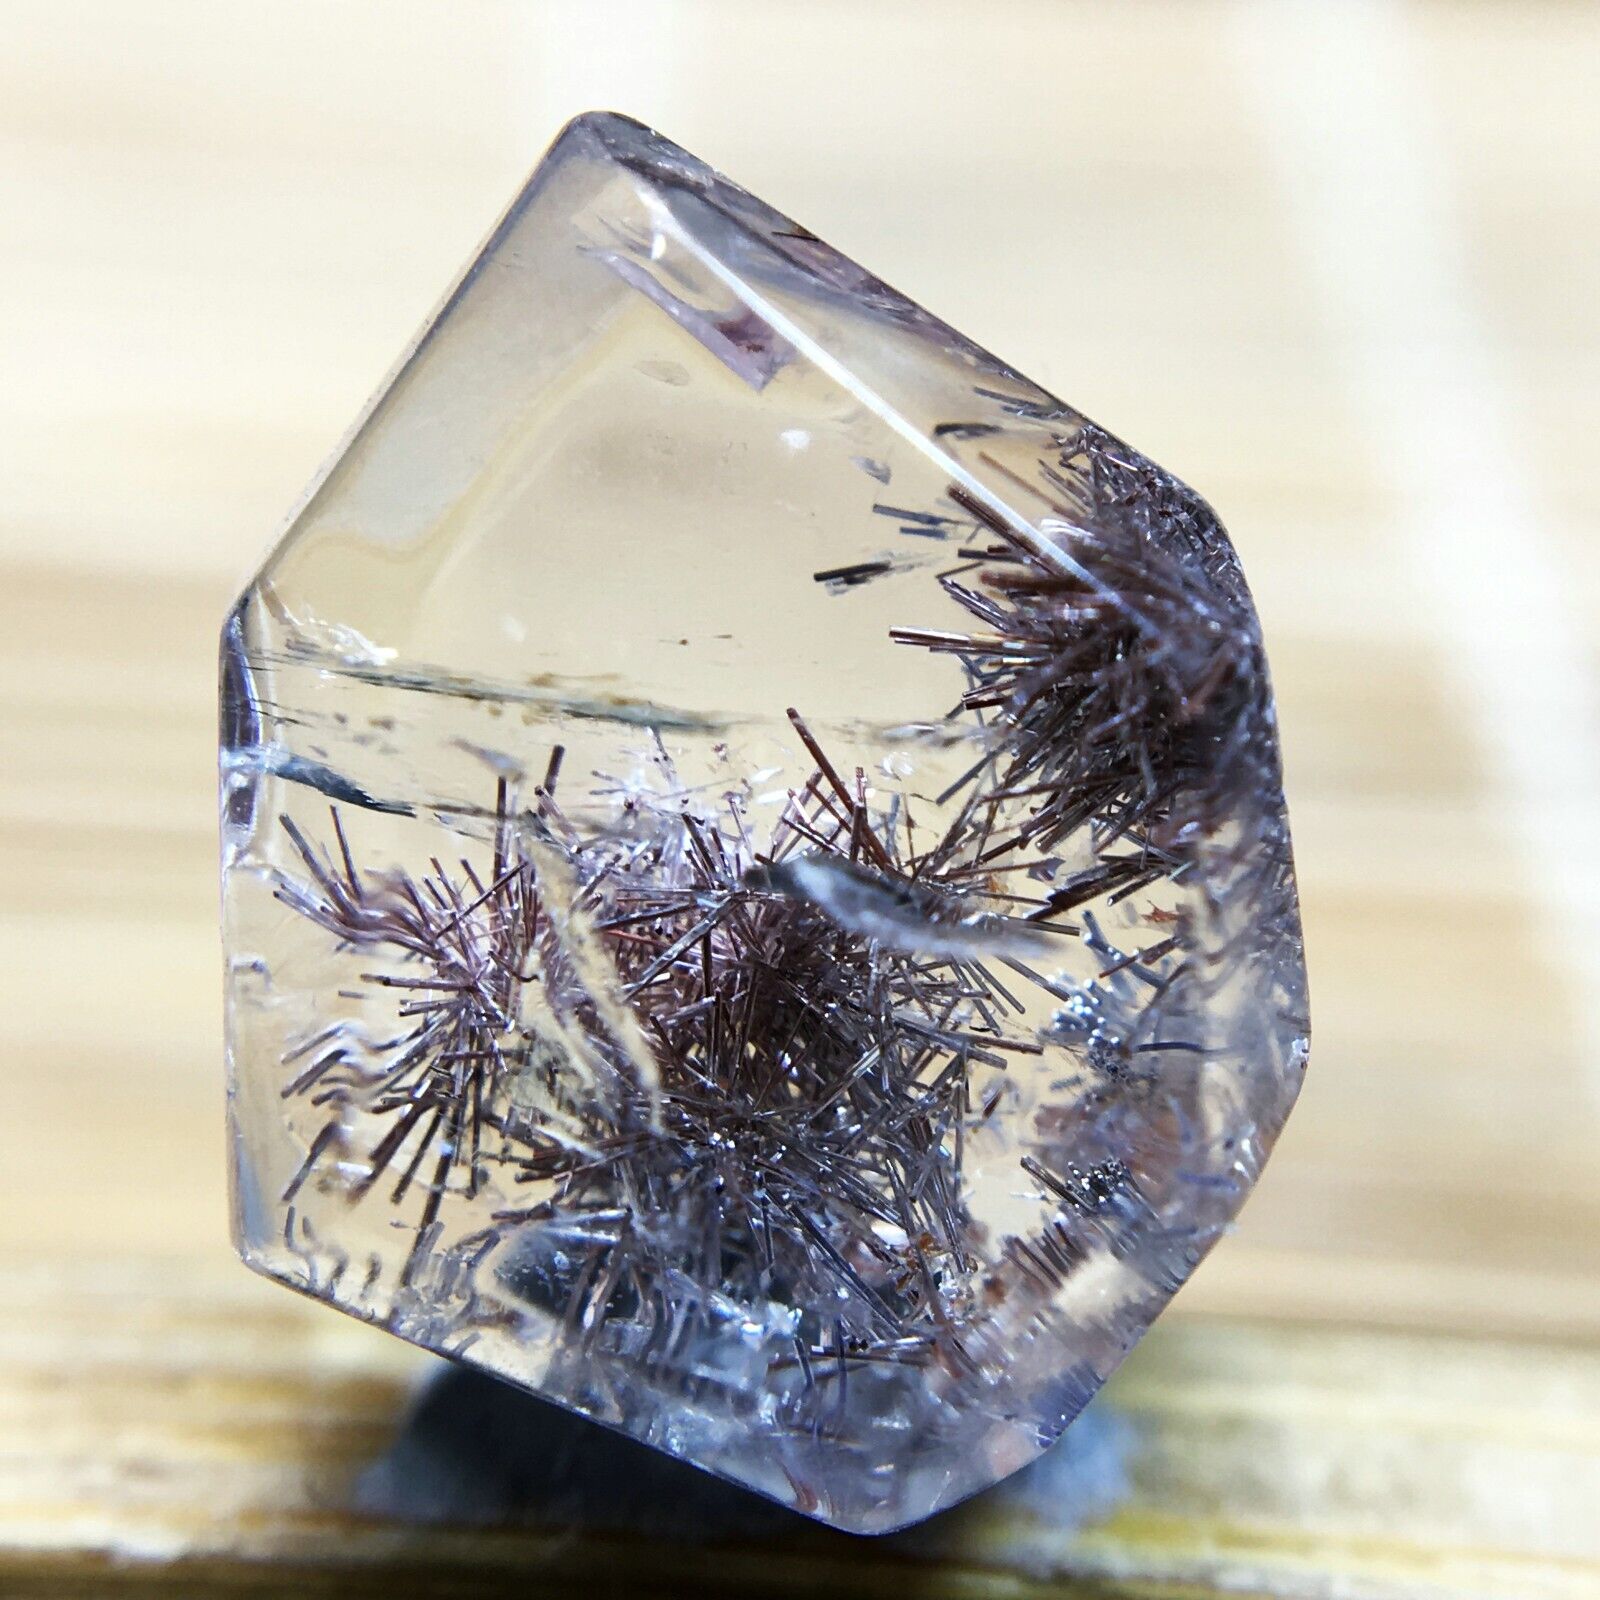 4.6Ct Very Rare NATURAL Beautiful Blue Dumortierite Quartz Crystal Specimen